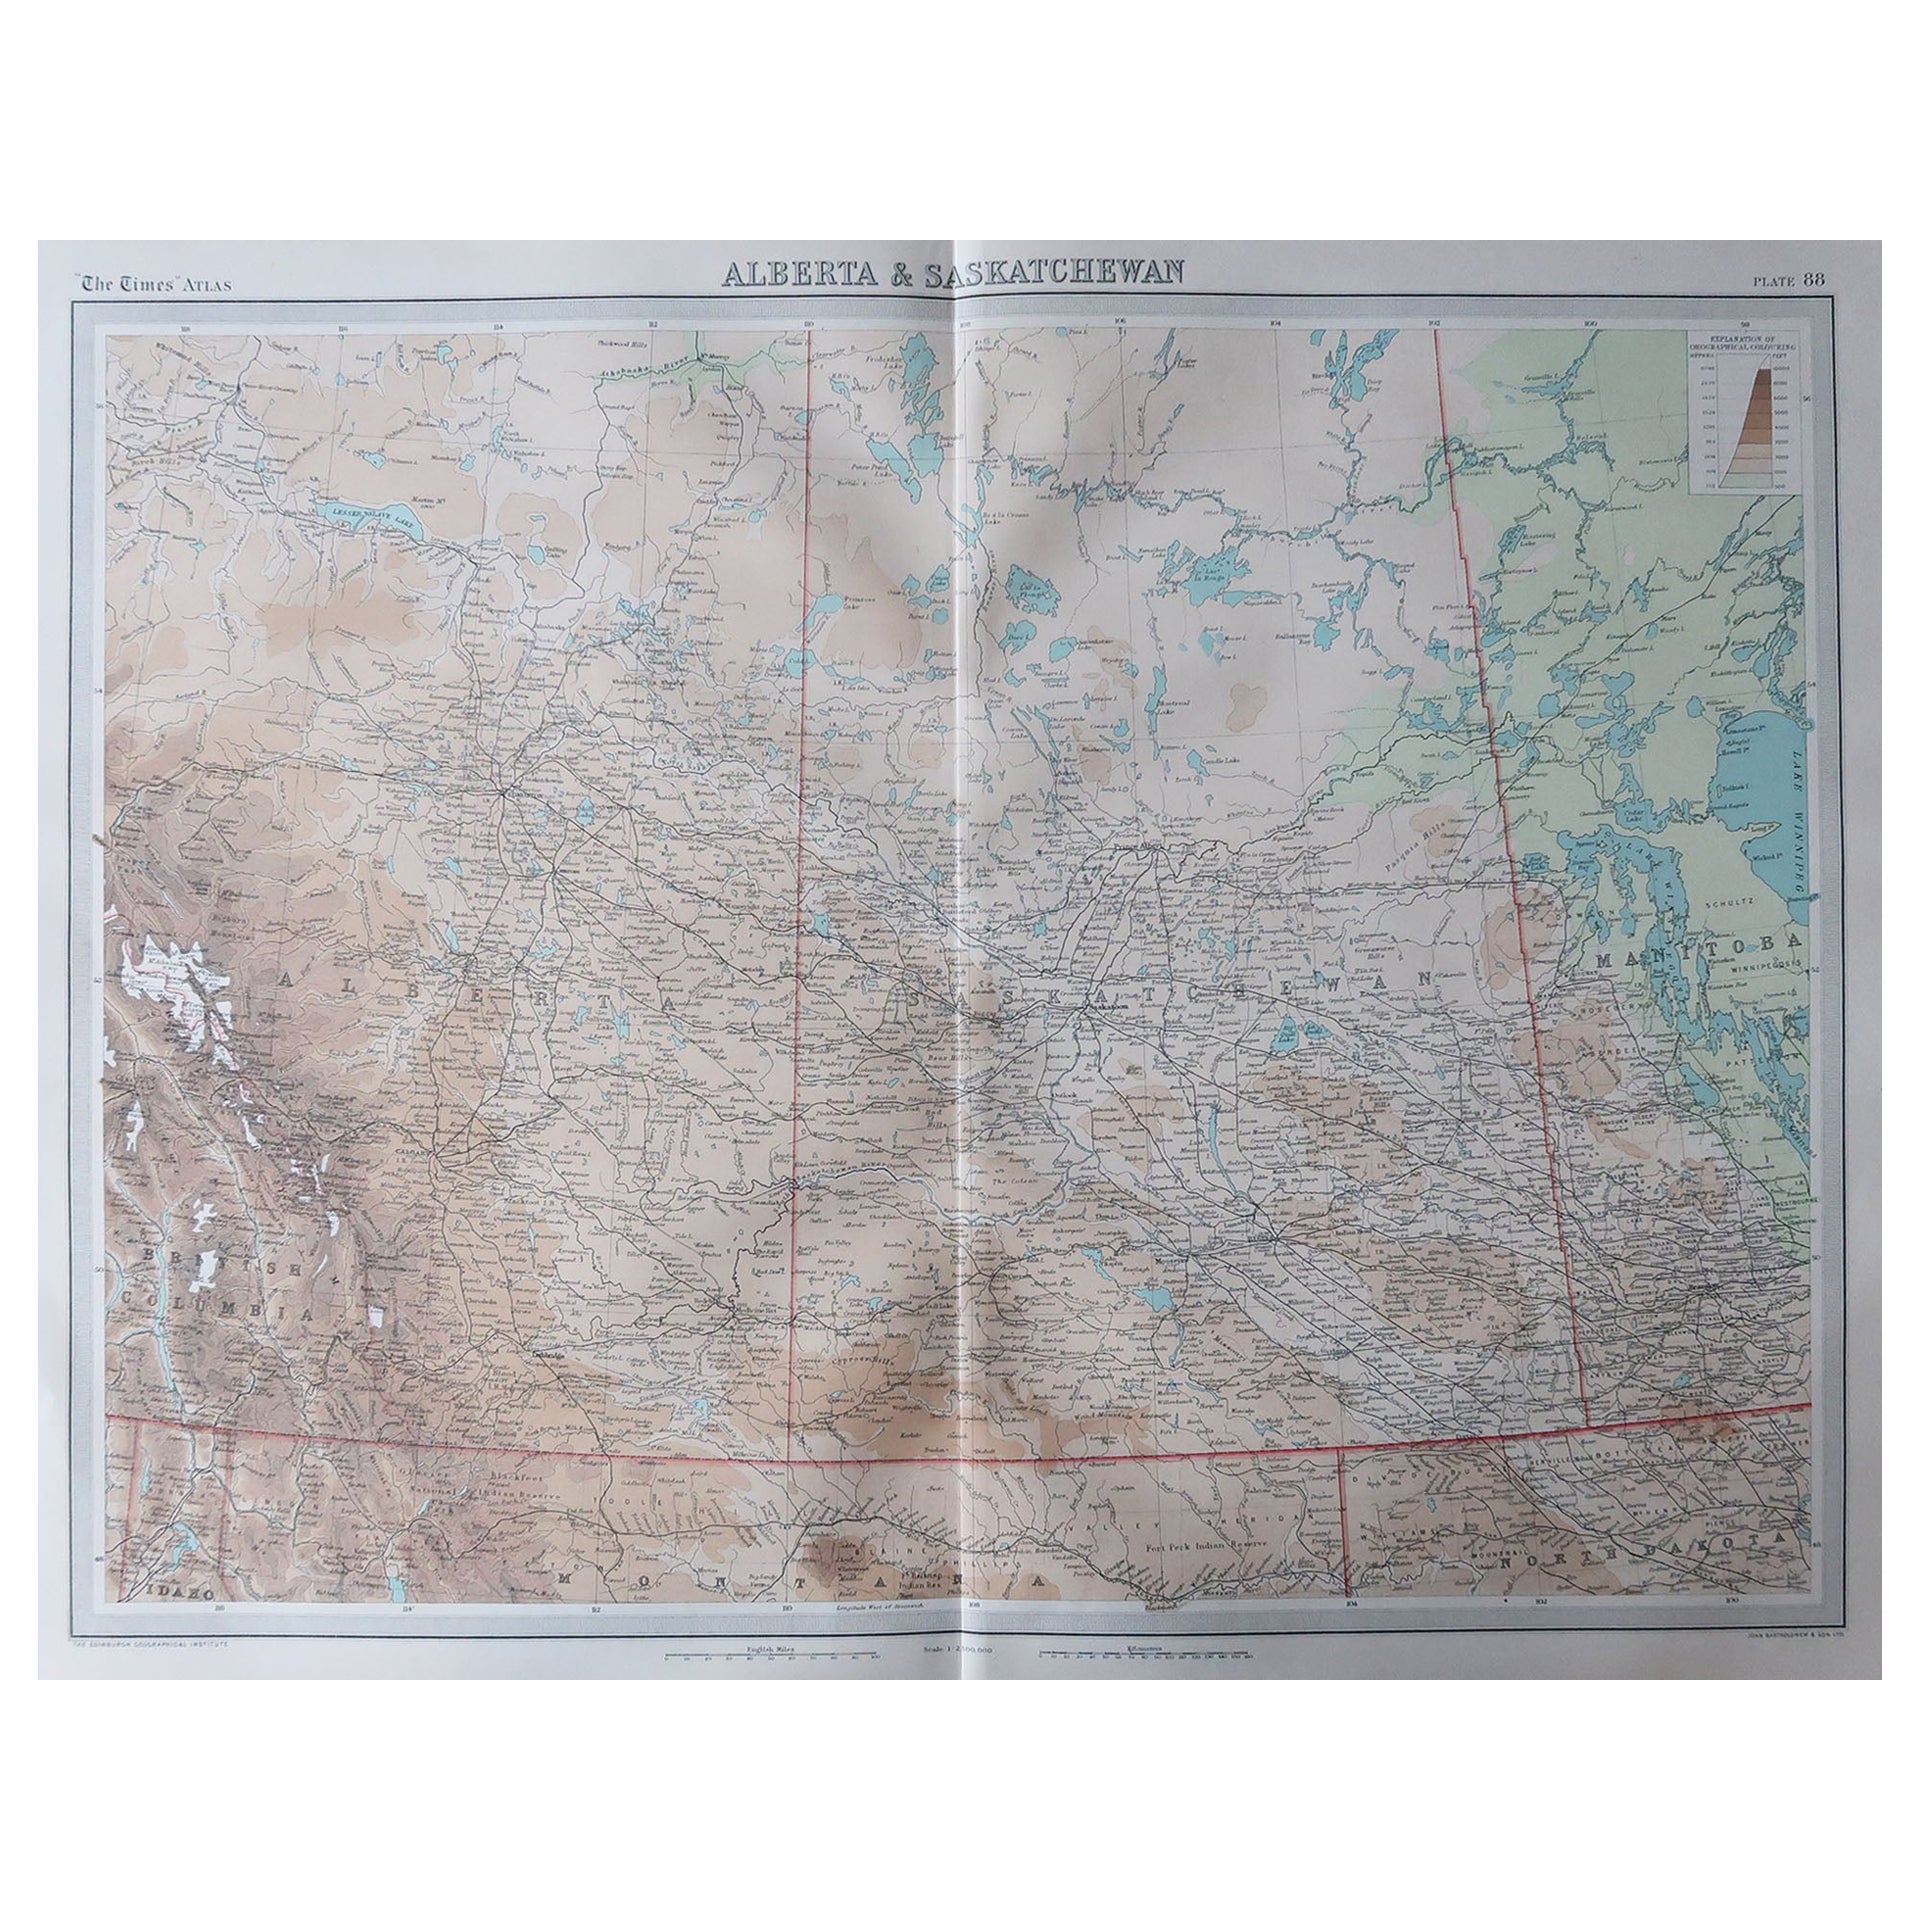 Große Original-Vintage-Karte von Alberta & Saskatchewan, Kanada, um 1920